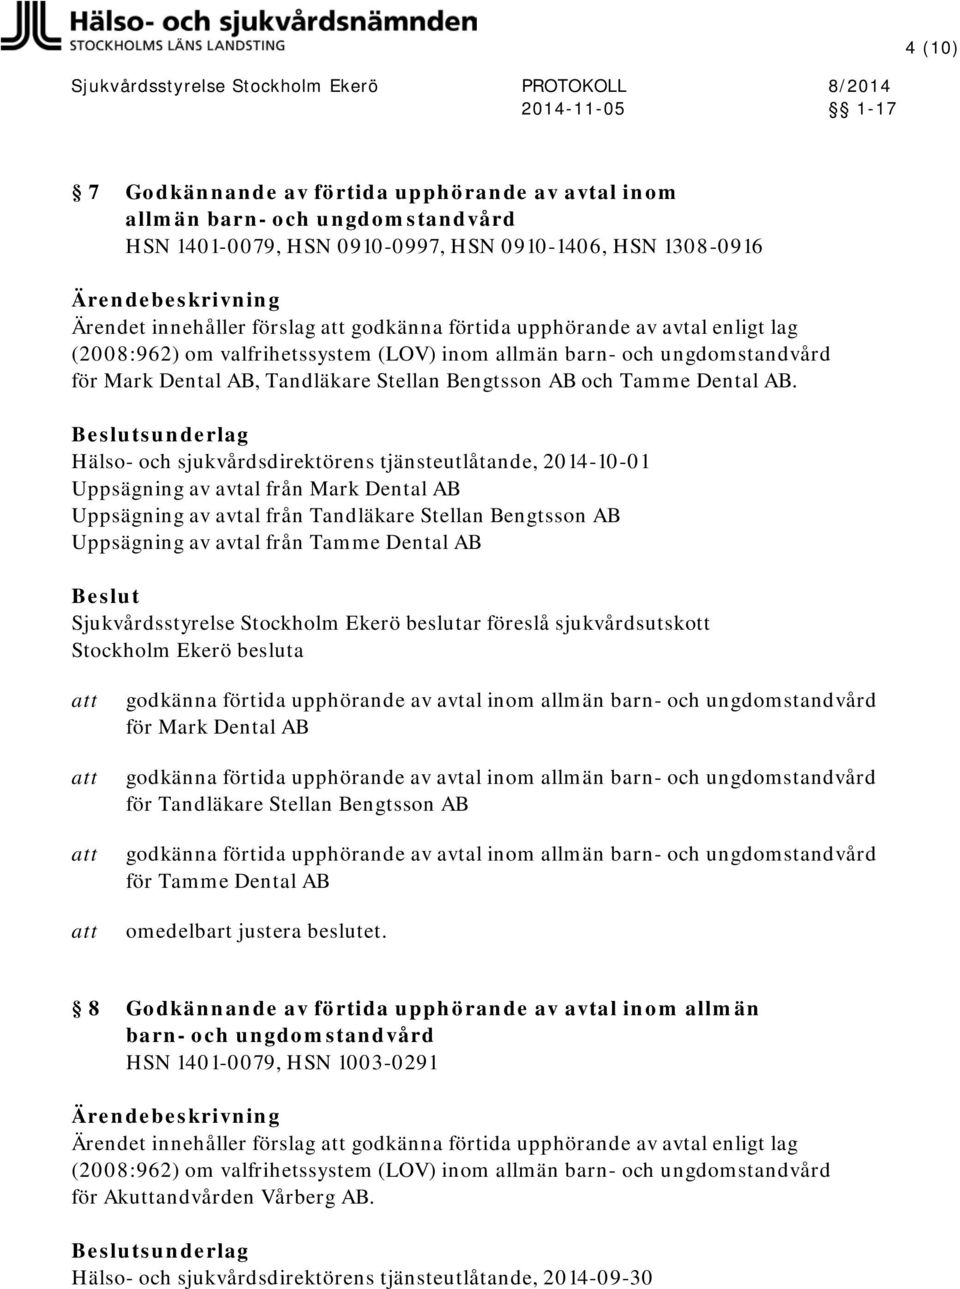 sunderlag Hälso- och sjukvårdsdirektörens tjänsteutlåtande, 2014-10-01 Uppsägning av avtal från Mark Dental AB Uppsägning av avtal från Tandläkare Stellan Bengtsson AB Uppsägning av avtal från Tamme